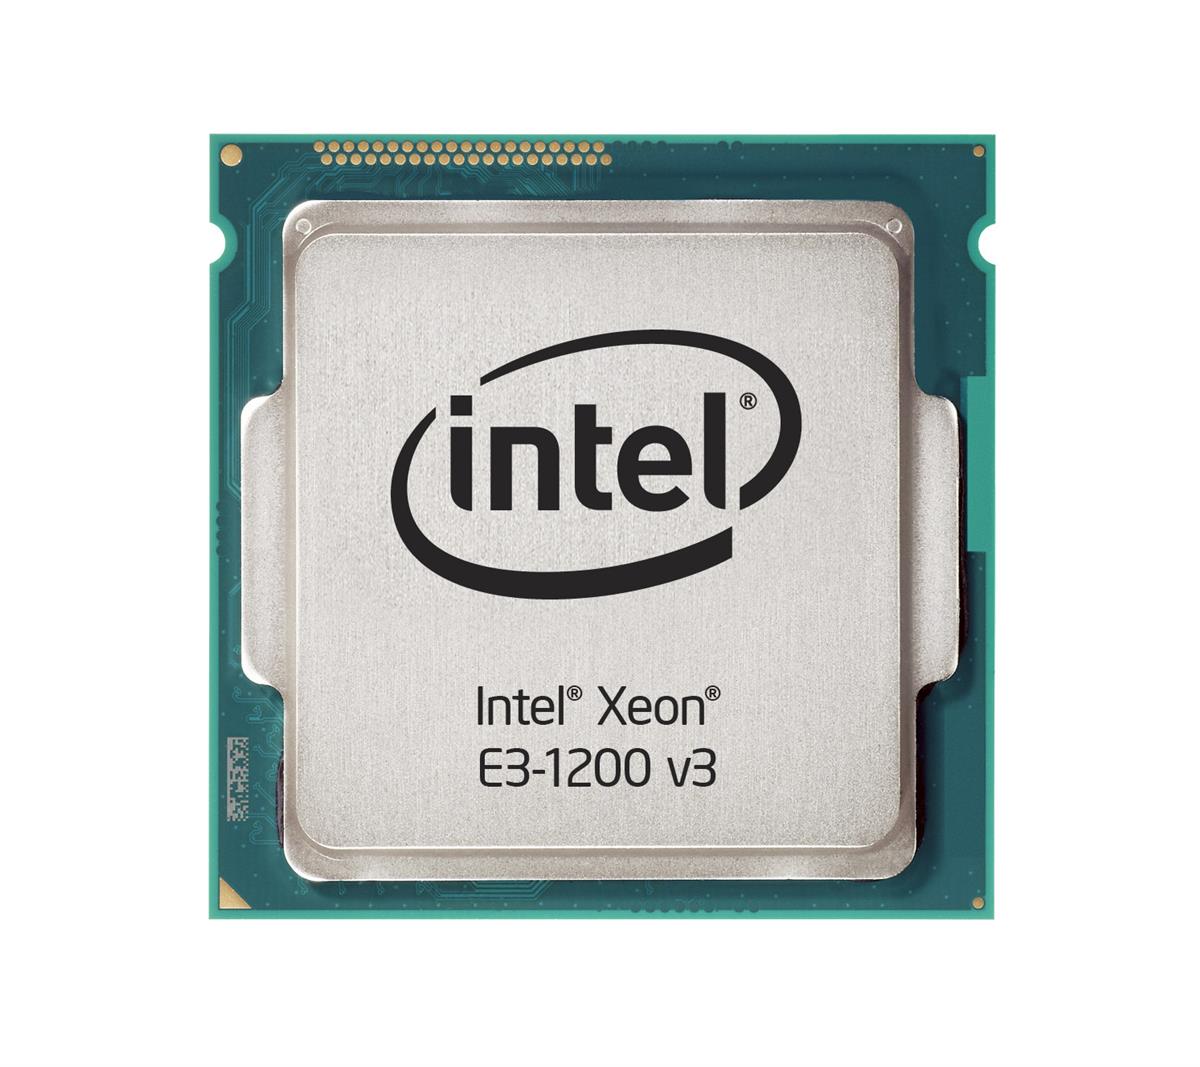 03T6757 Lenovo 3.30GHz 5.00GT/s DMI 8MB L3 Cache Intel Xeon E3-1230 v3 Quad Core Processor Upgrade